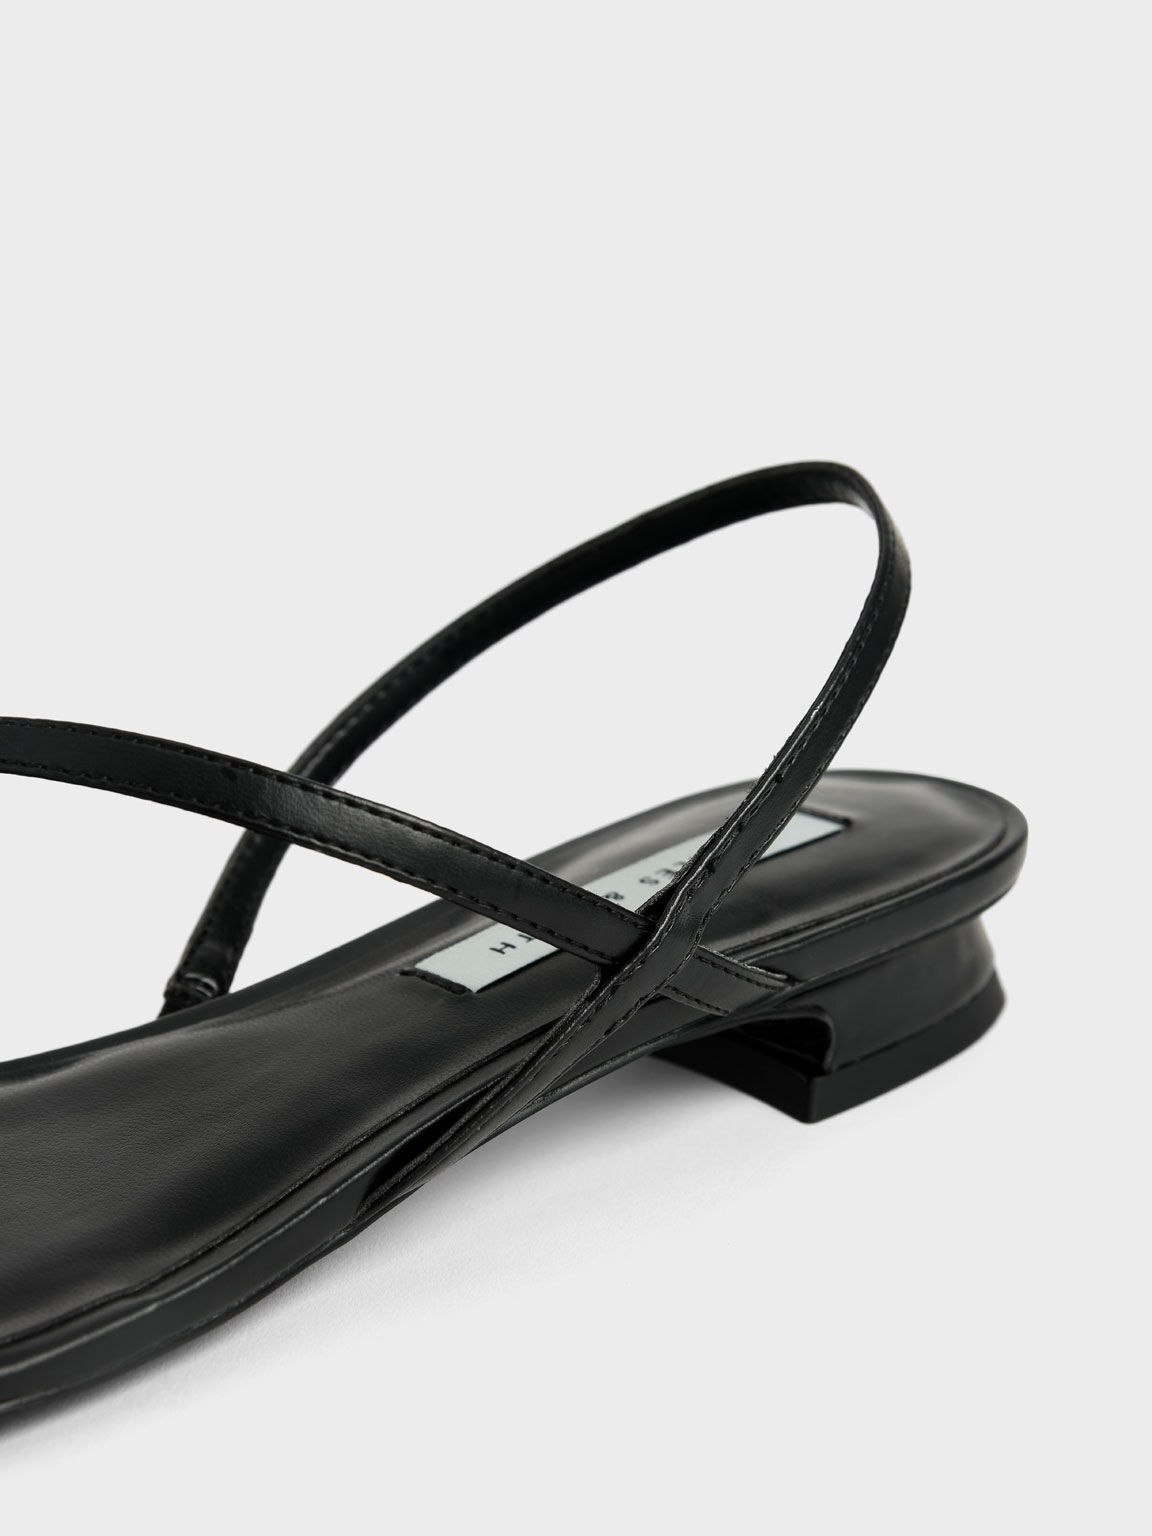 Gem-Embellished Strappy Sandals, Black, hi-res